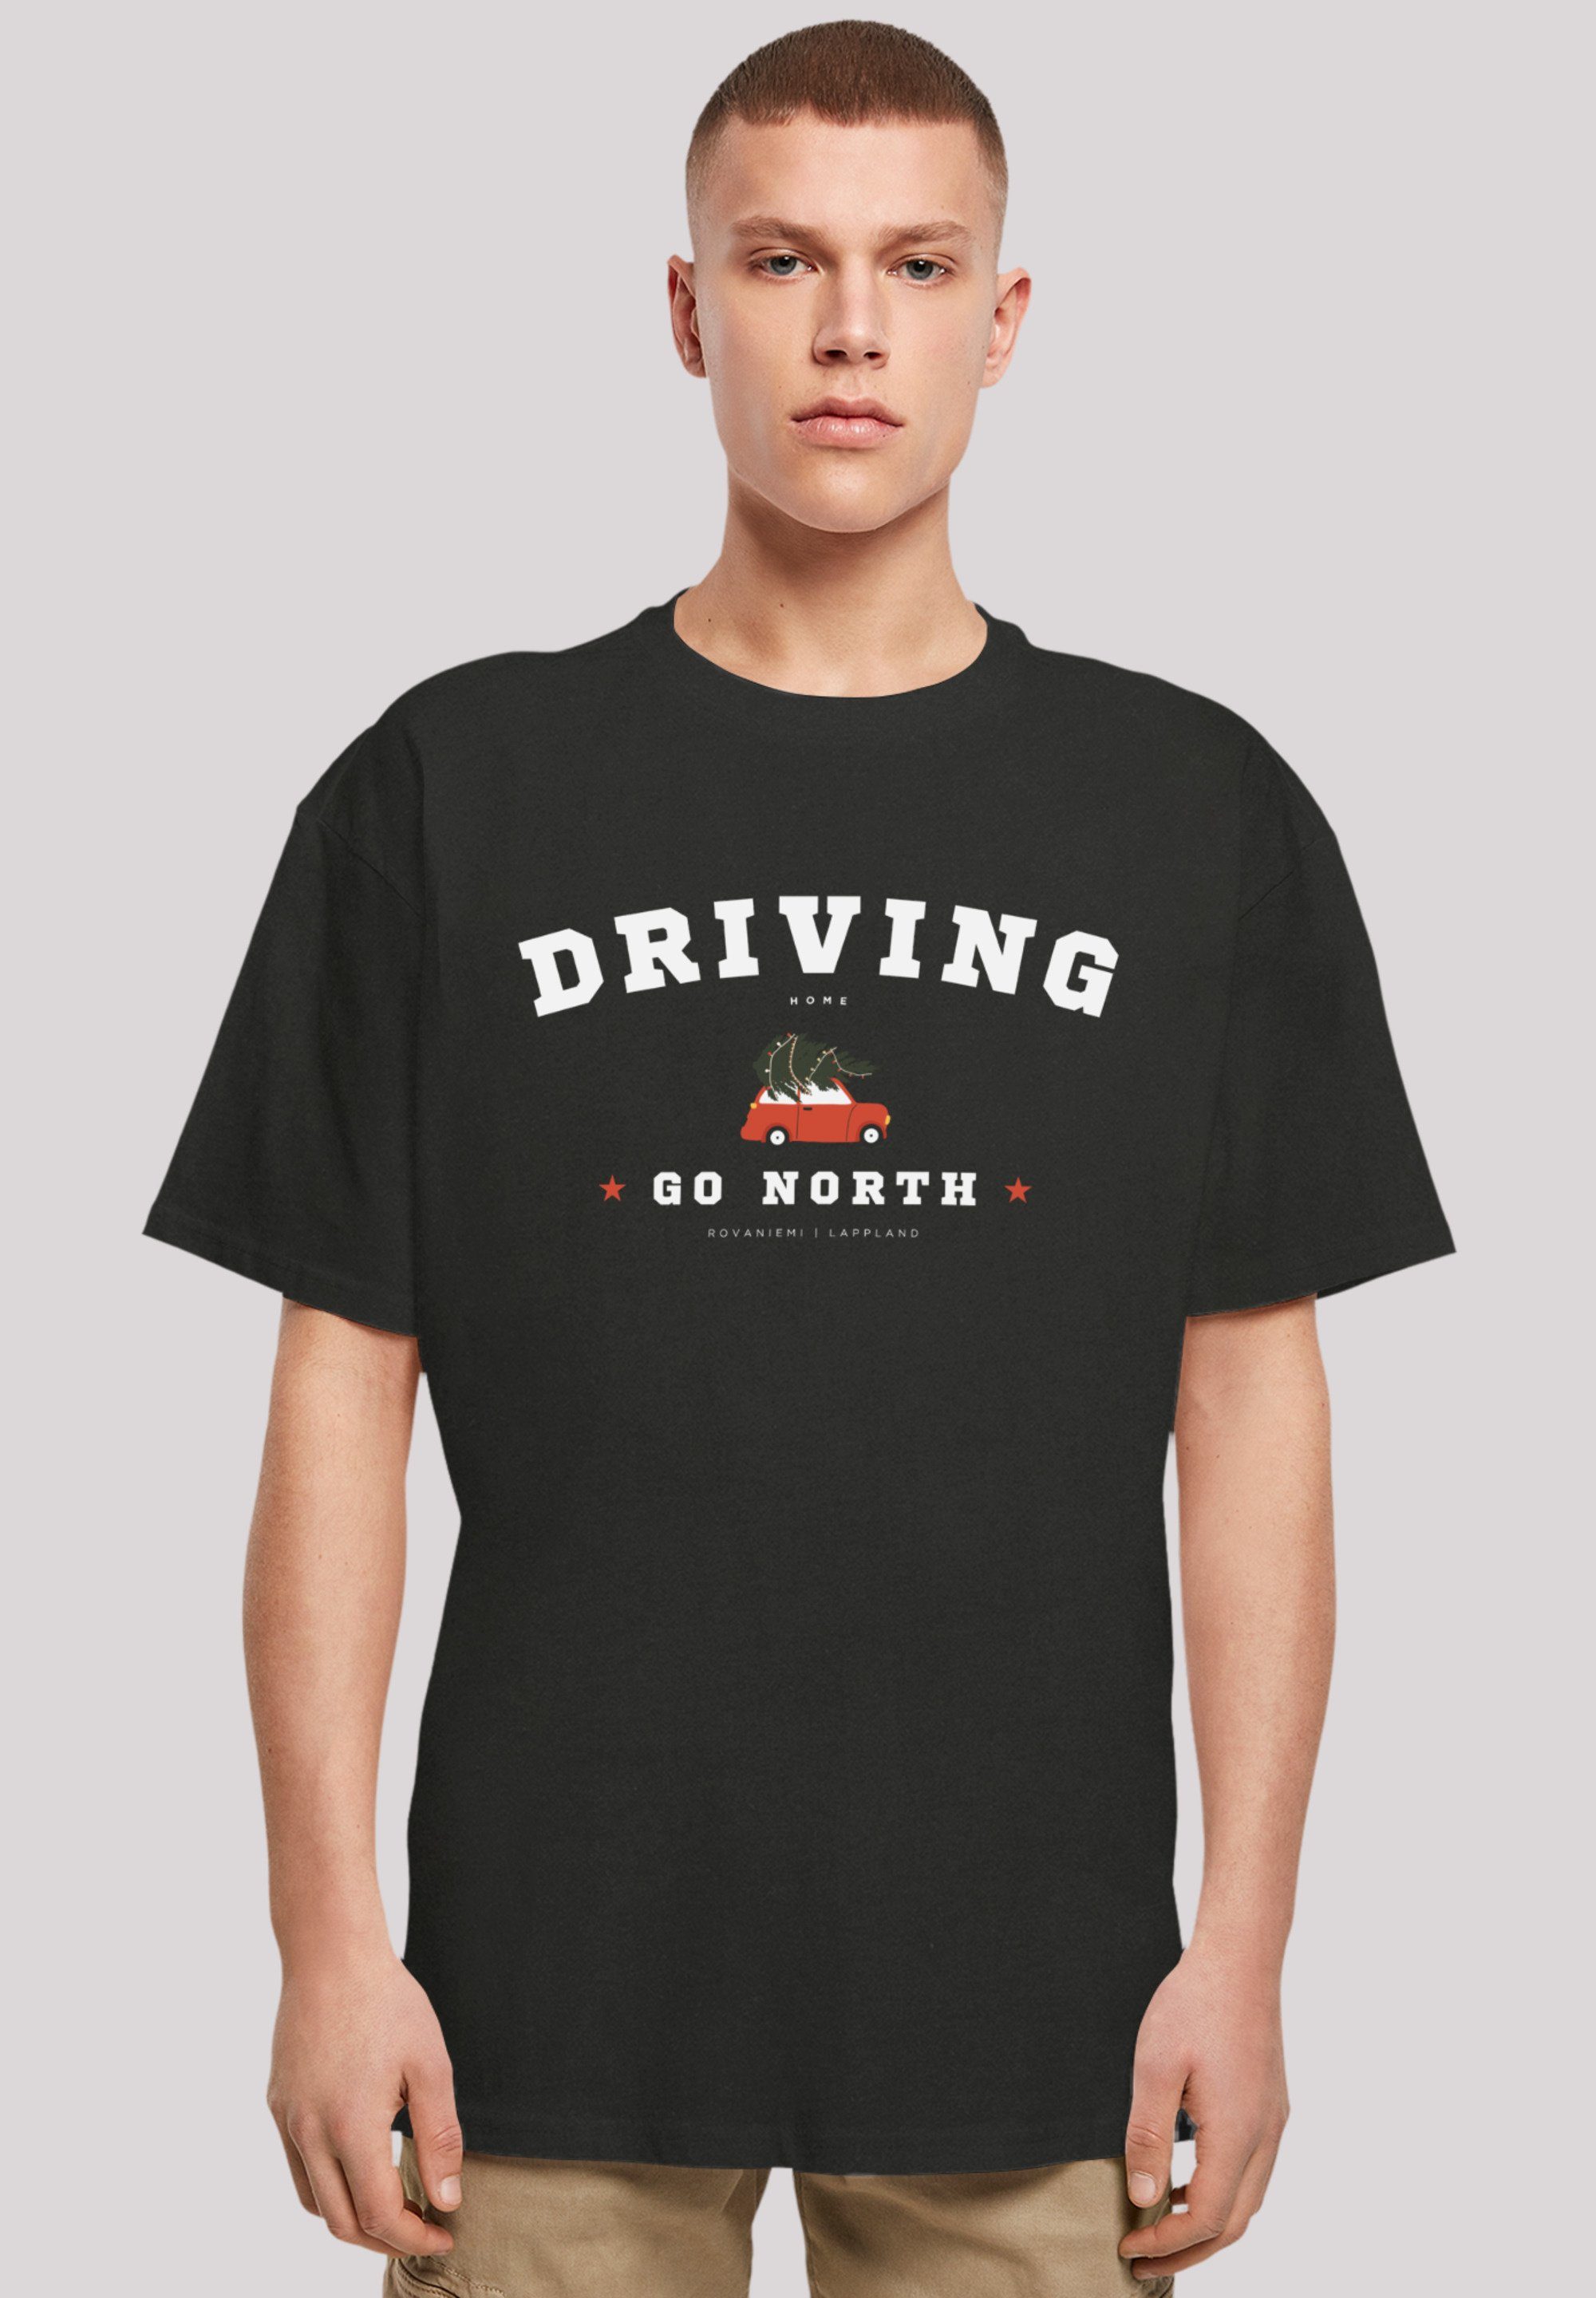 Home Geschenk, T-Shirt Driving schwarz Weihnachten F4NT4STIC Weihnachten, Logo